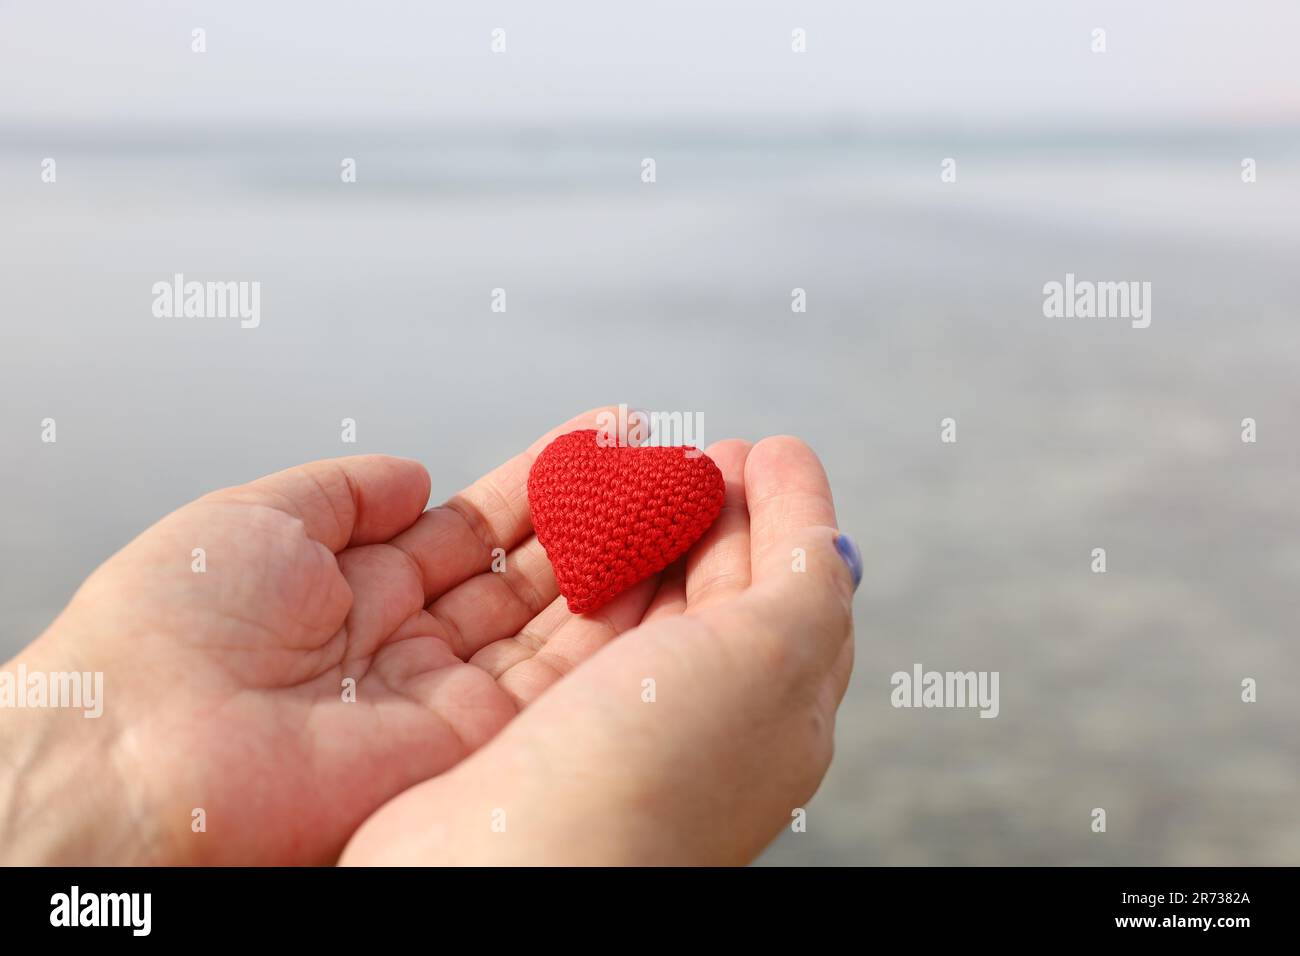 Vacanza al mare e amore su una spiaggia di sabbia, cuore rosso lavorato a maglia in una mano femminile contro l'acqua. San Valentino, concetto di viaggio romantico Foto Stock